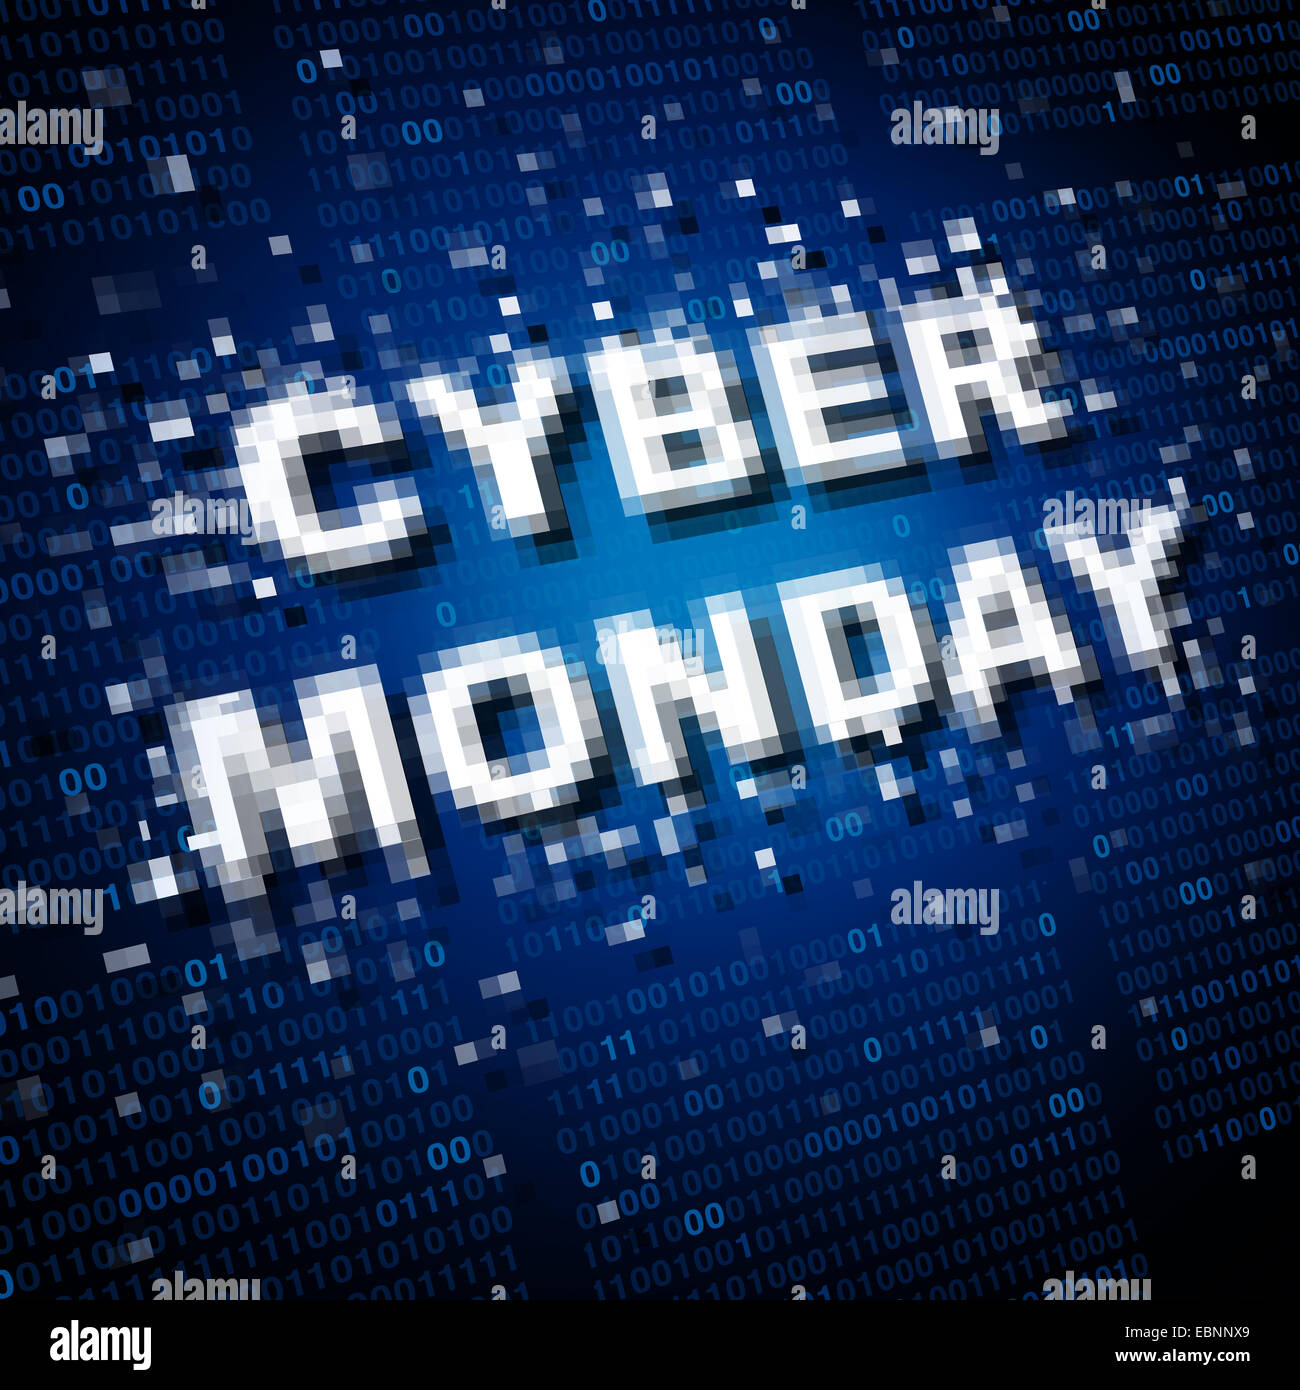 Cyber Monday icono venta y comercialización como símbolo de un nuevo concepto de ventas de publicidad online para internet celebraciones navideñas. Foto de stock